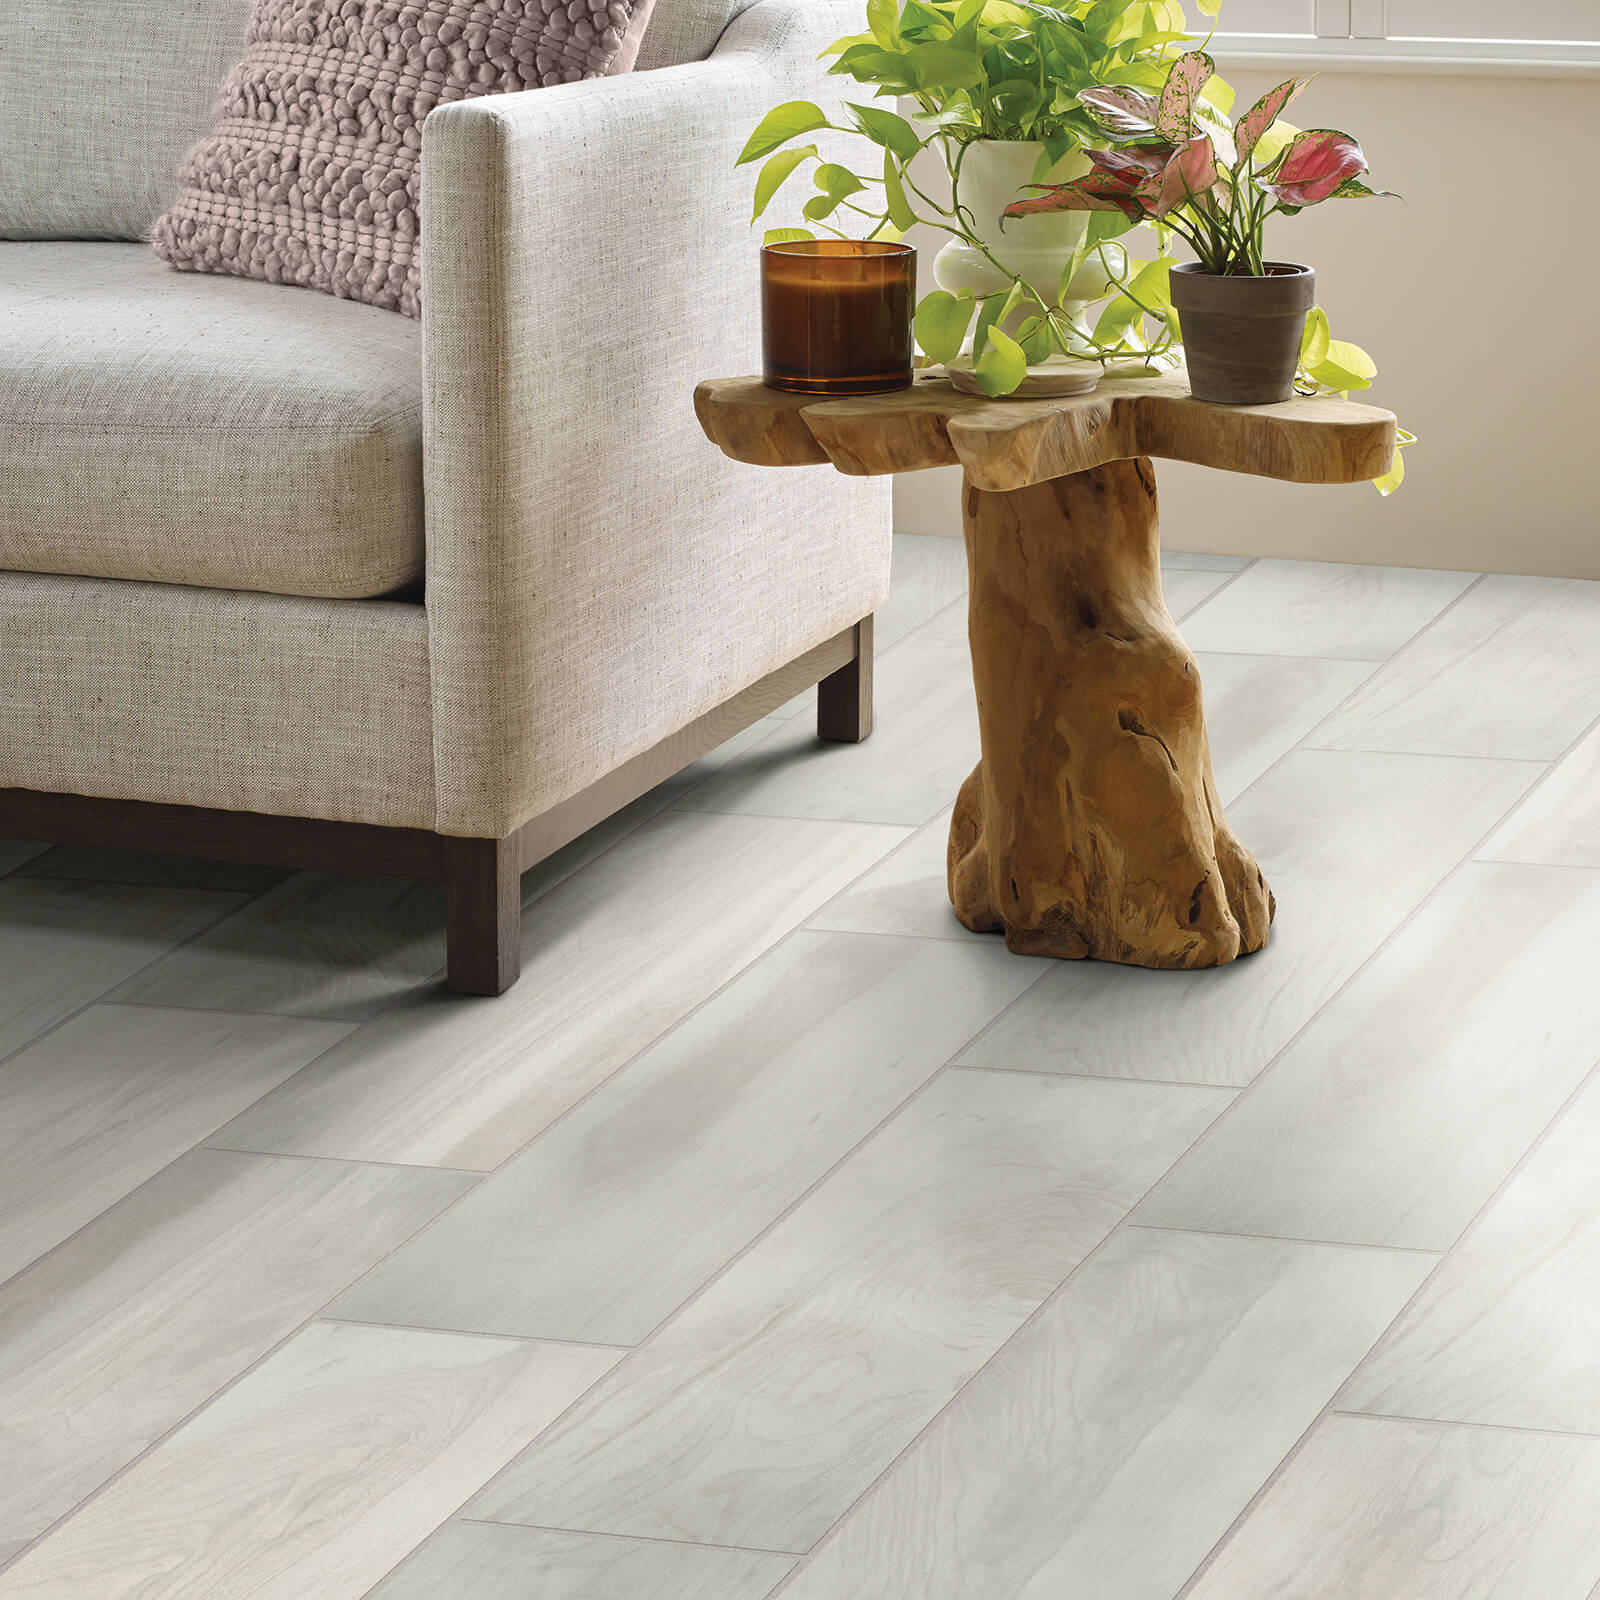 Tile flooring | CarpetsPlus COLORTILE of Hutchinson